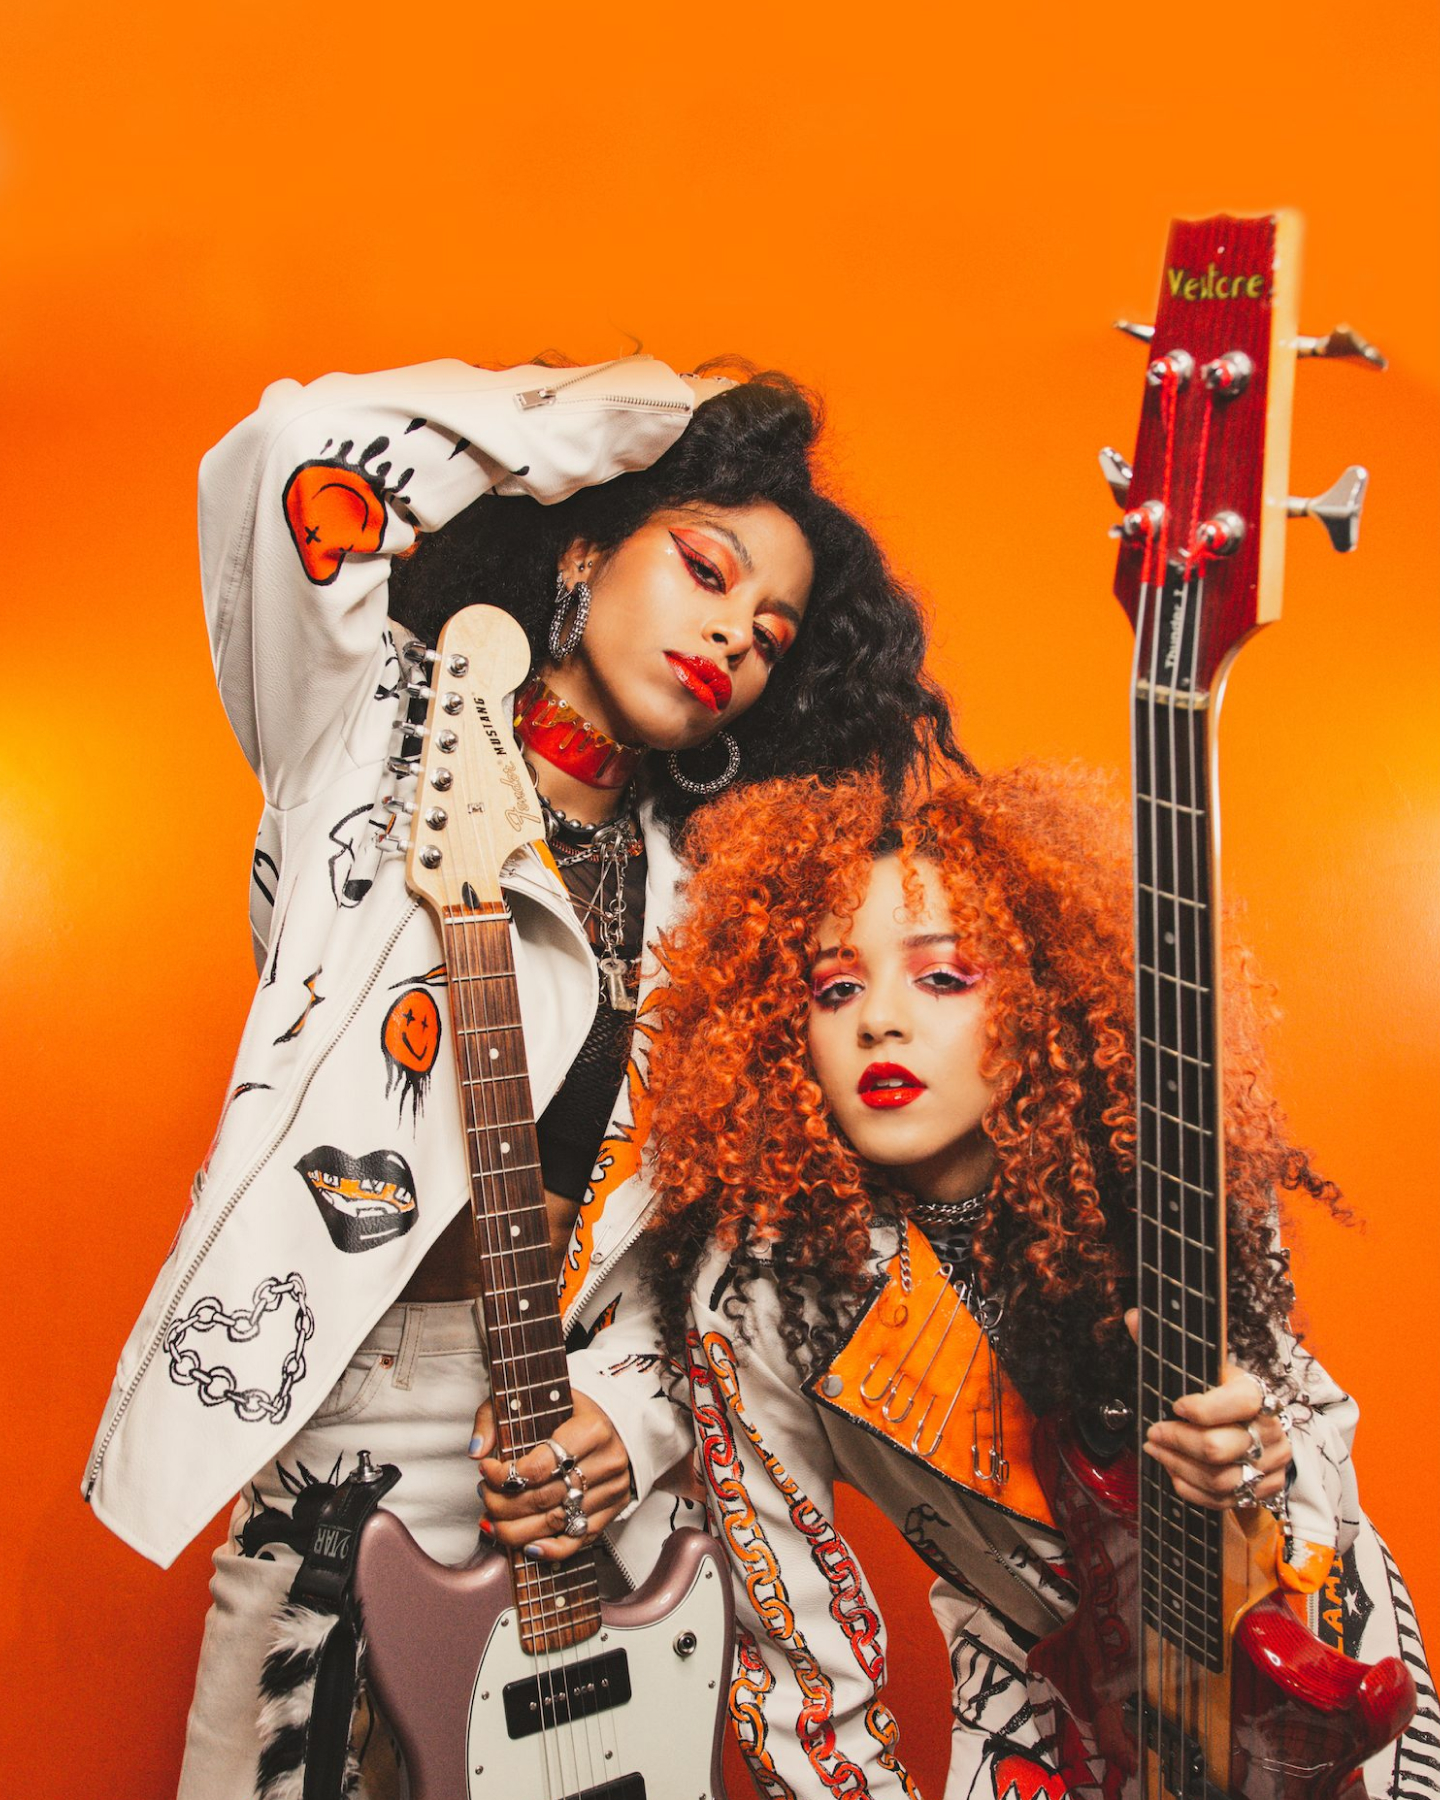 흰색 재킷과 주황색 블라우스를 입은 두 명의 스타일리시한 뮤지션이 주황색 배경을 배경으로 일렉트릭 기타를 들고 포즈를 취하고 있습니다.